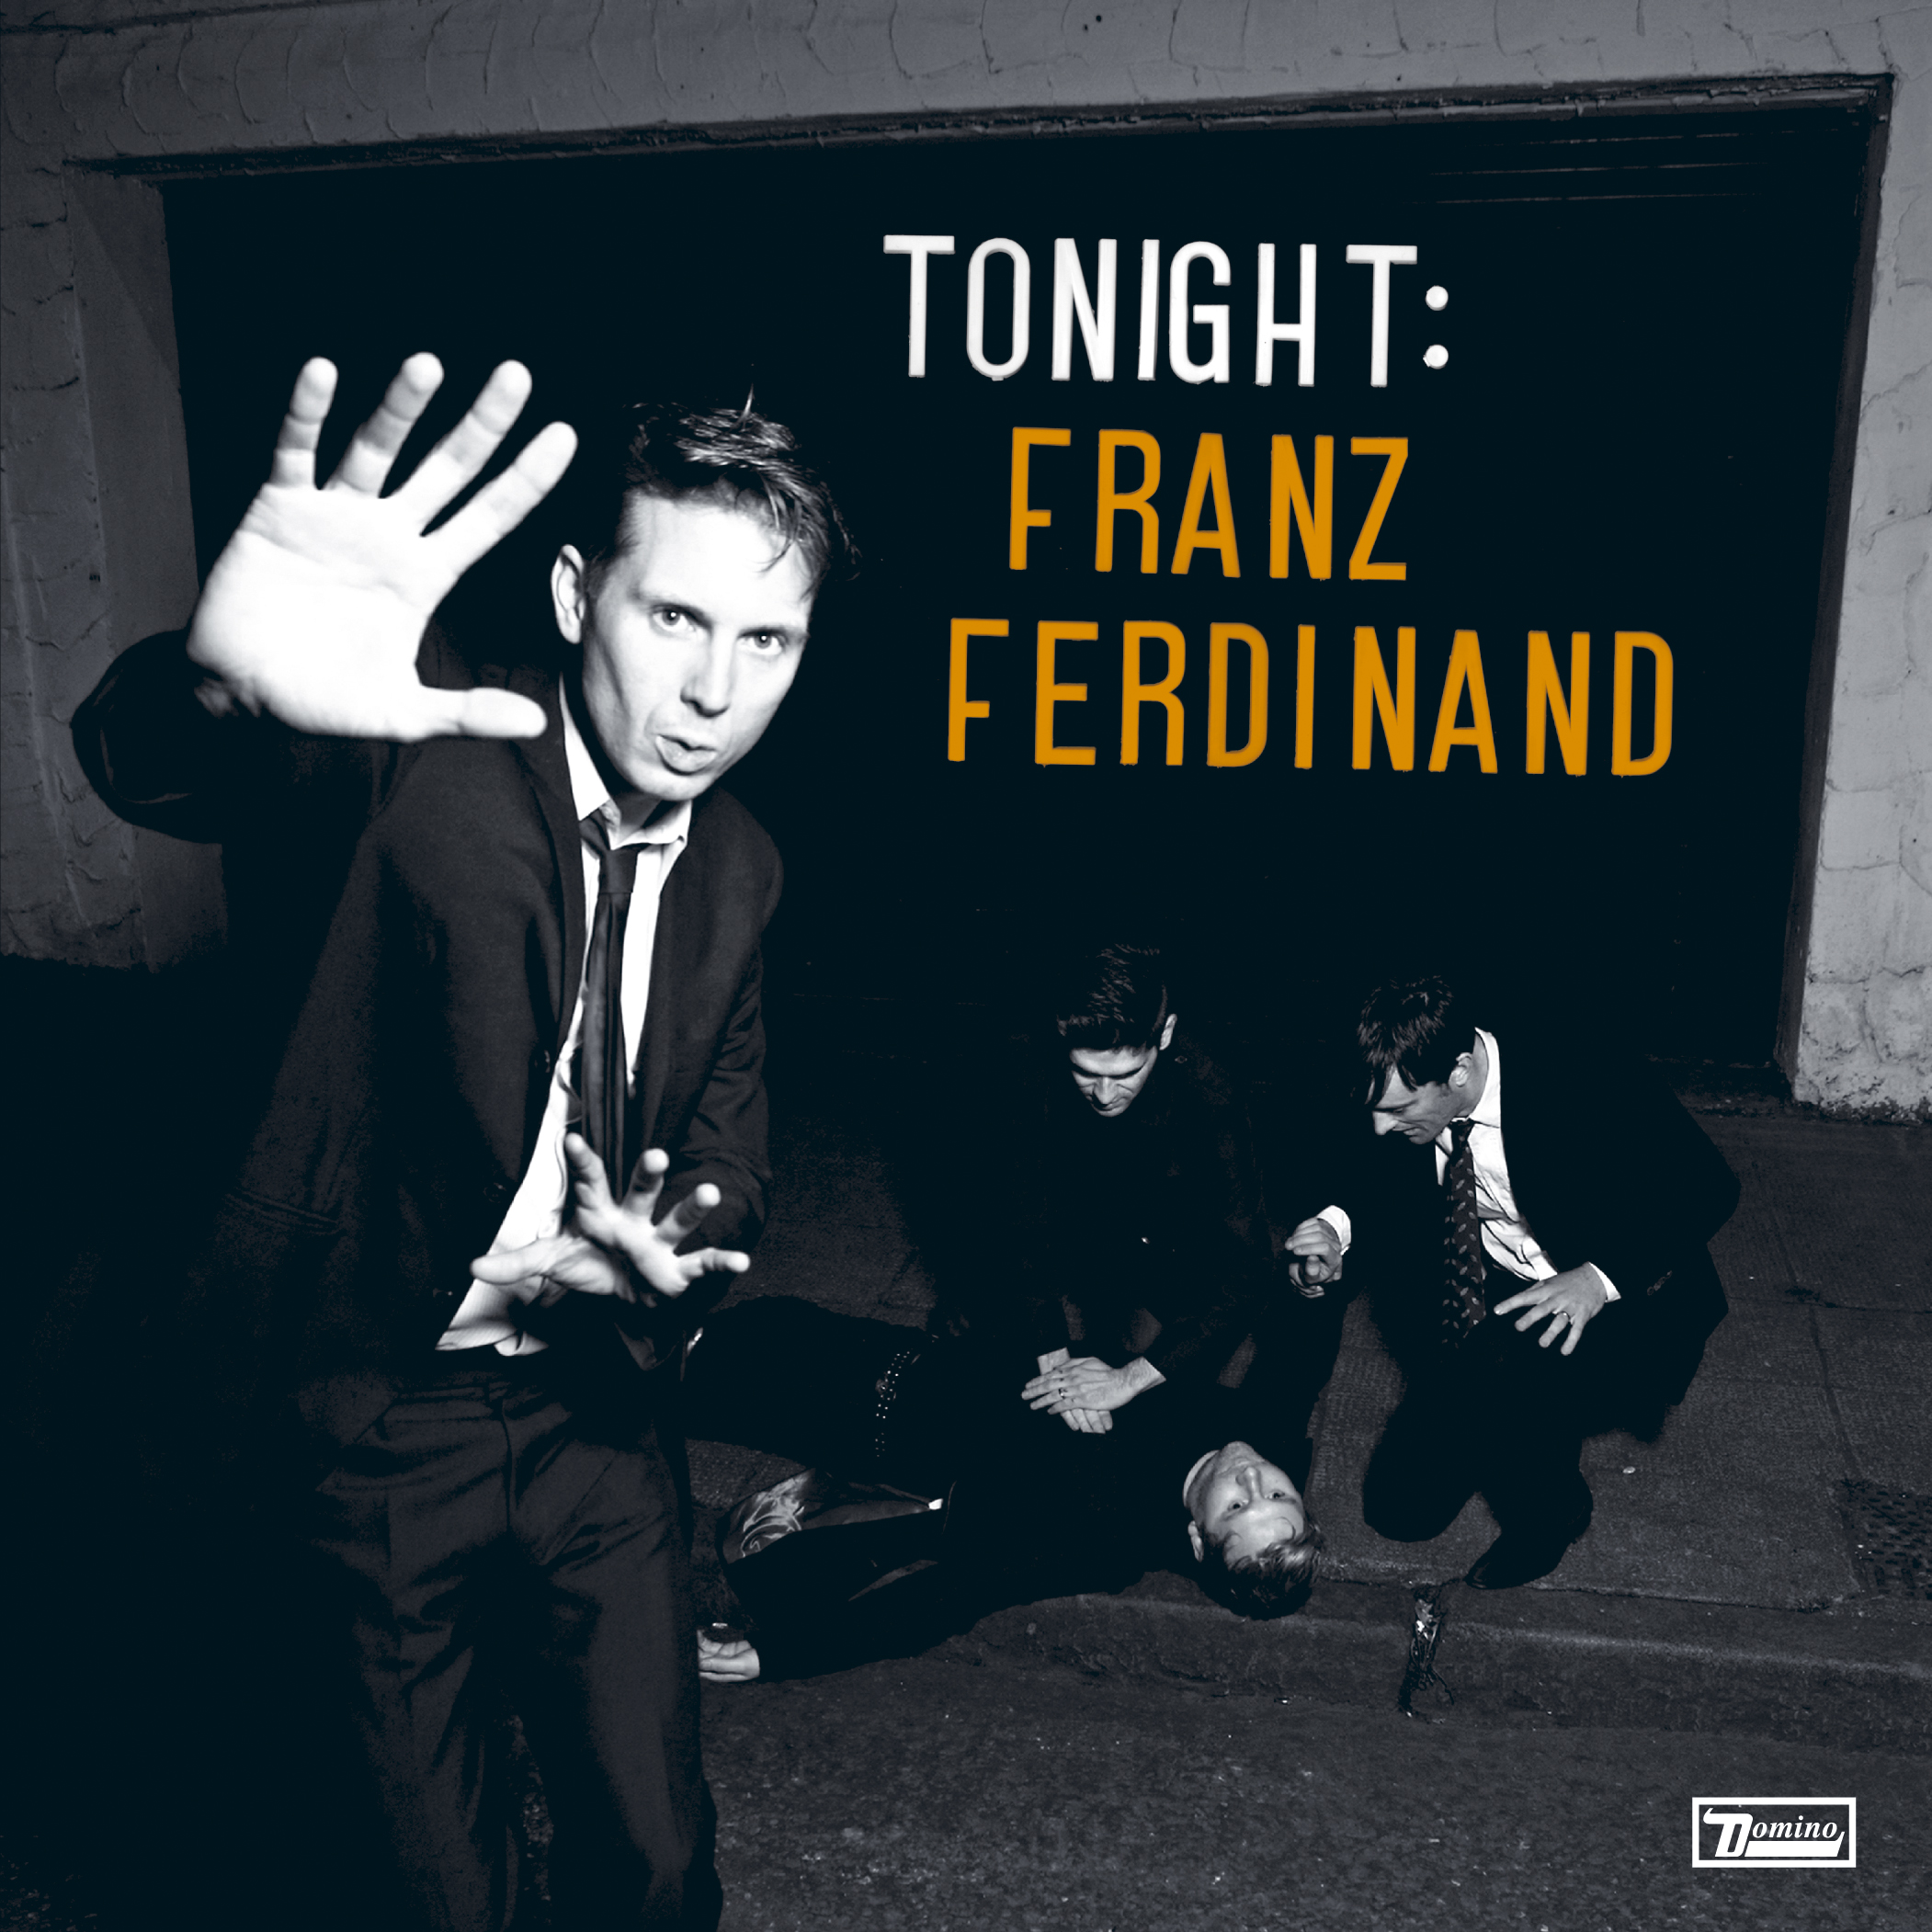 Franz Ferdinand - Tonight: Franz Ferdinand - CD